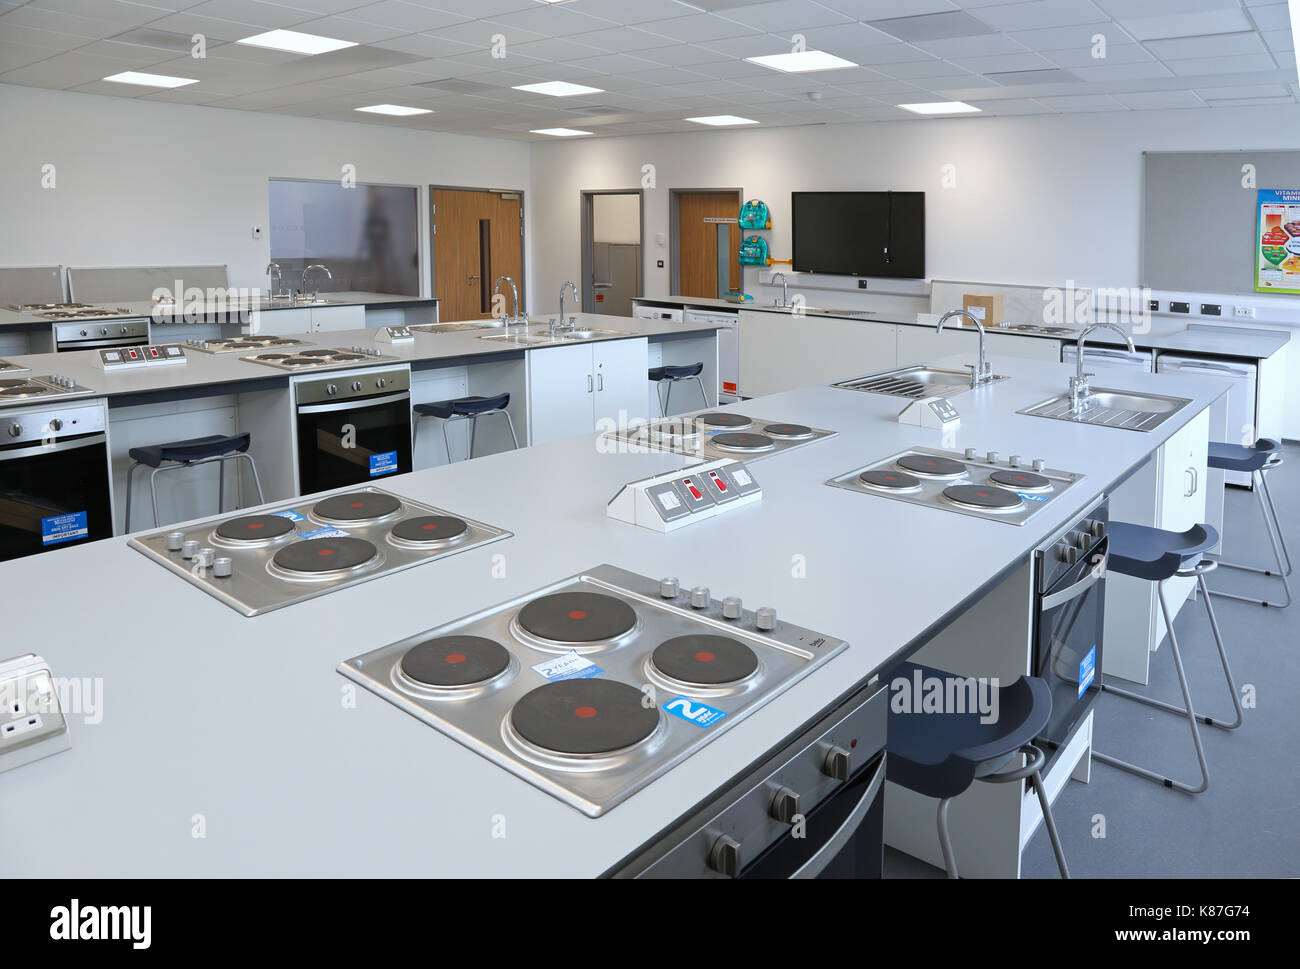 Science domestique cuisine / salle de classe dans une nouvelle école secondaire, Londres. Cuisson et fours montre des enseignants et au-delà de banc. Banque D'Images